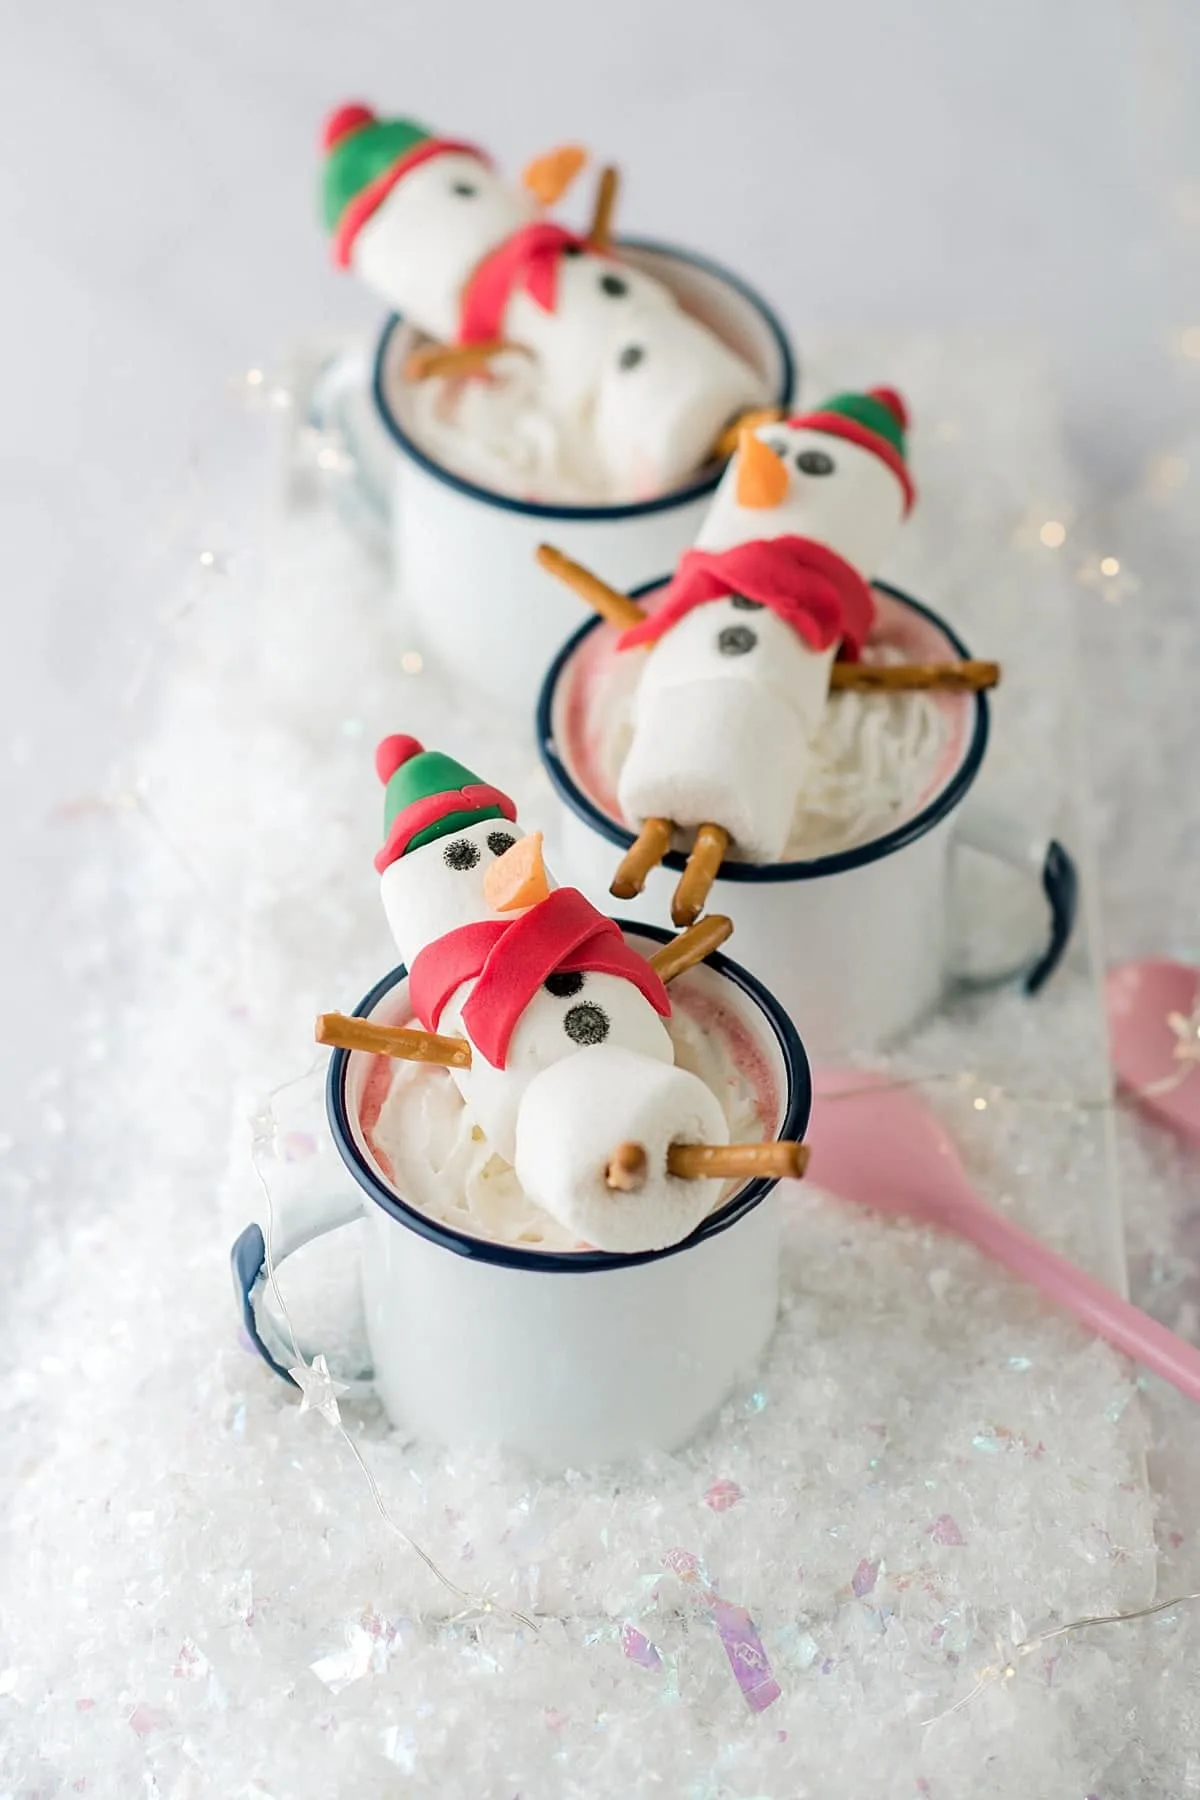 https://bakedbree.com/wp-content/uploads/2019/01/snowman-hot-chocolate-35.jpg.webp